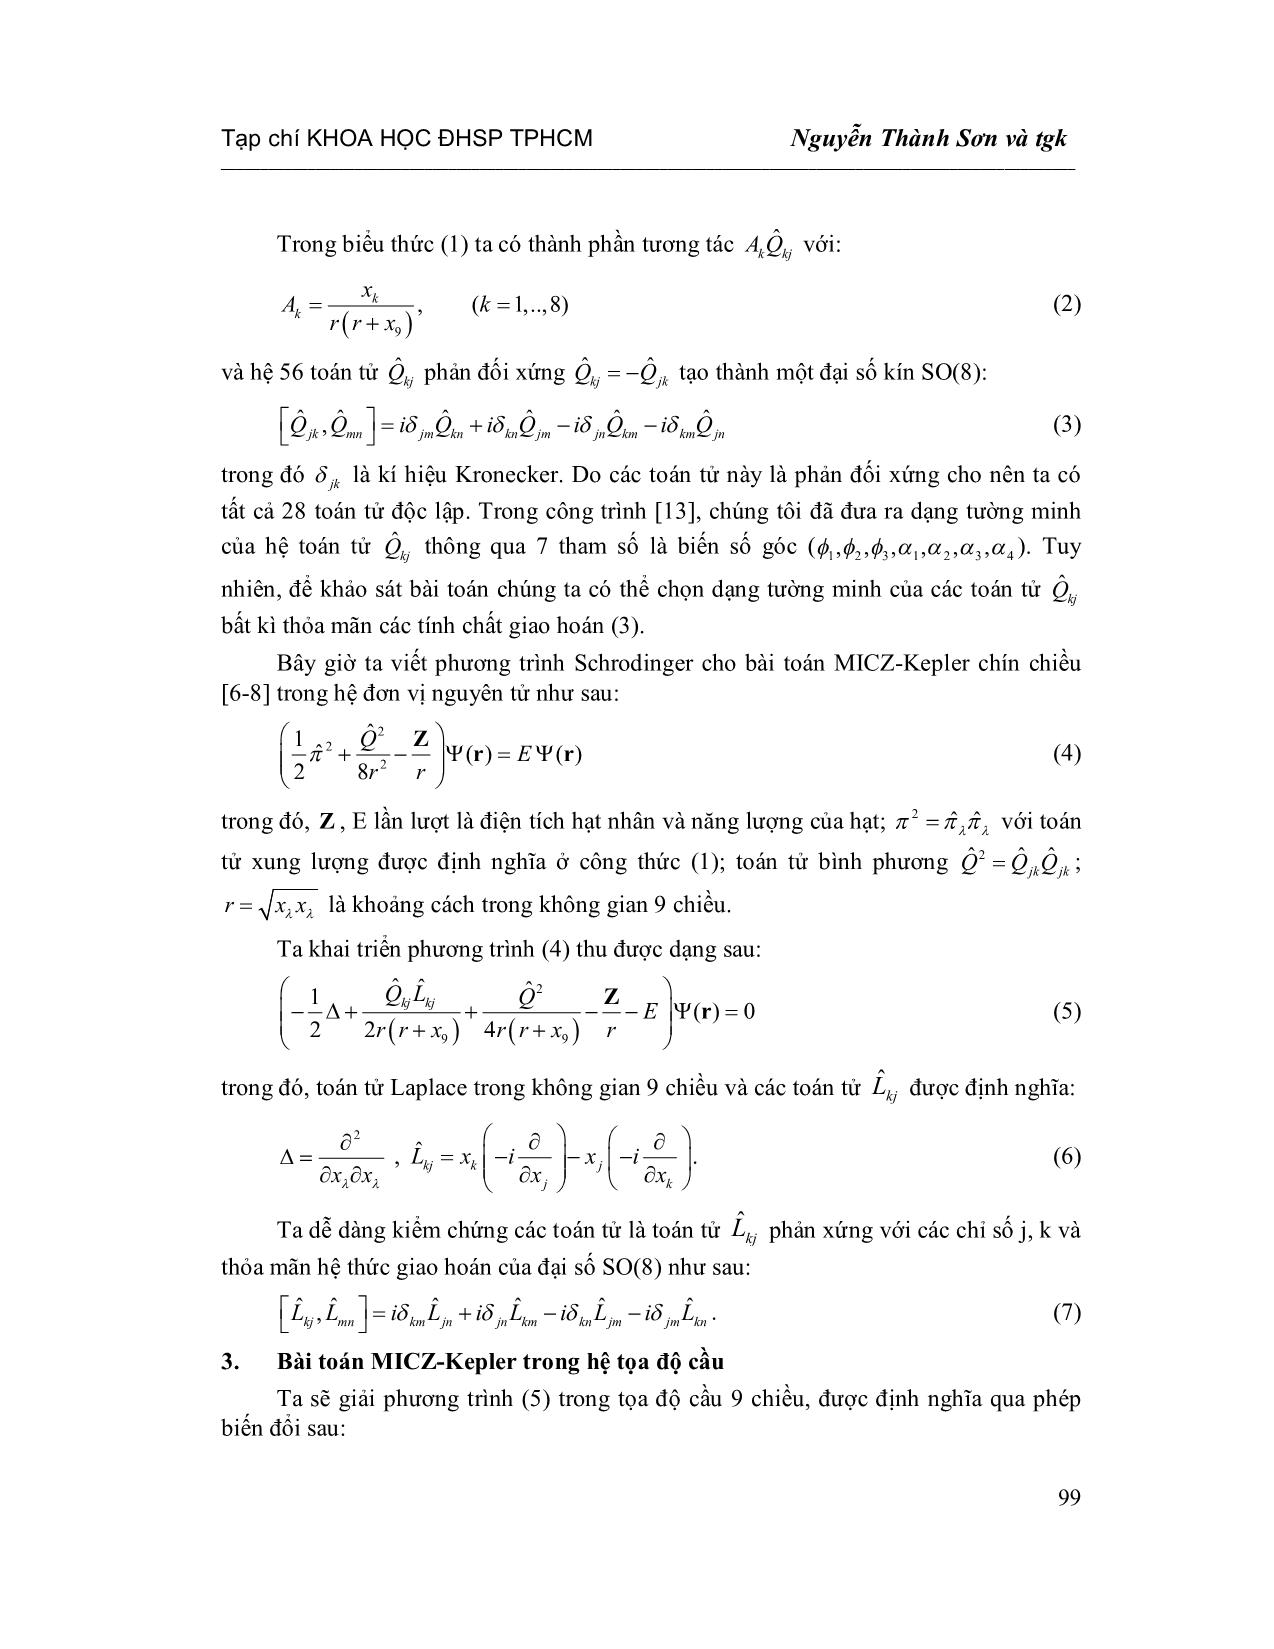 Lời giải chính xác cho bài toán Micz-Kepler chín chiều trang 3